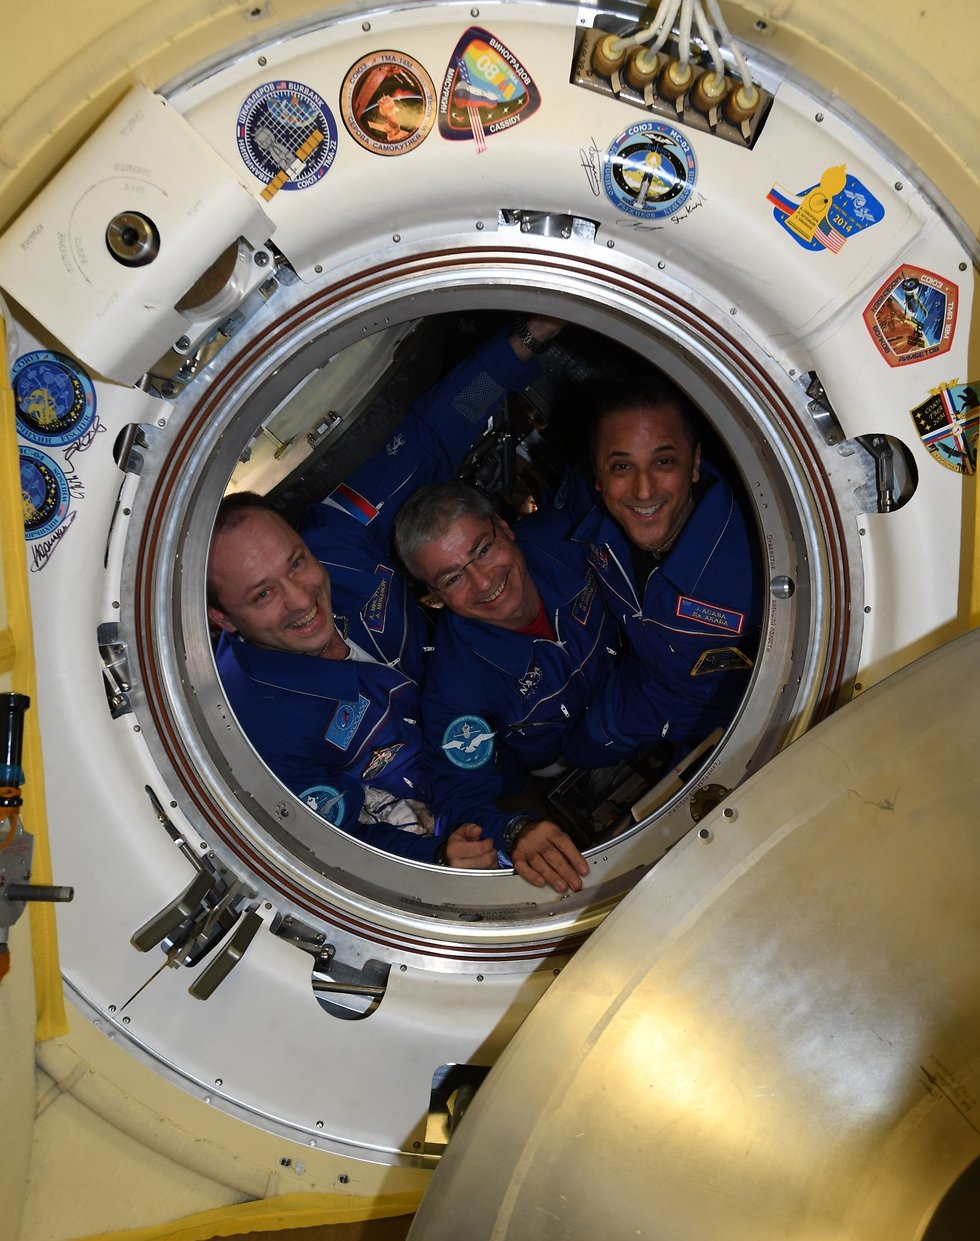 נפרדים מהאסטרונאוטים והקוסמונאוט שחזרו השבוע לכדור הארץ (צילום: סקוט טינגל, נאס"א) (צילום: סקוט טינגל, נאס